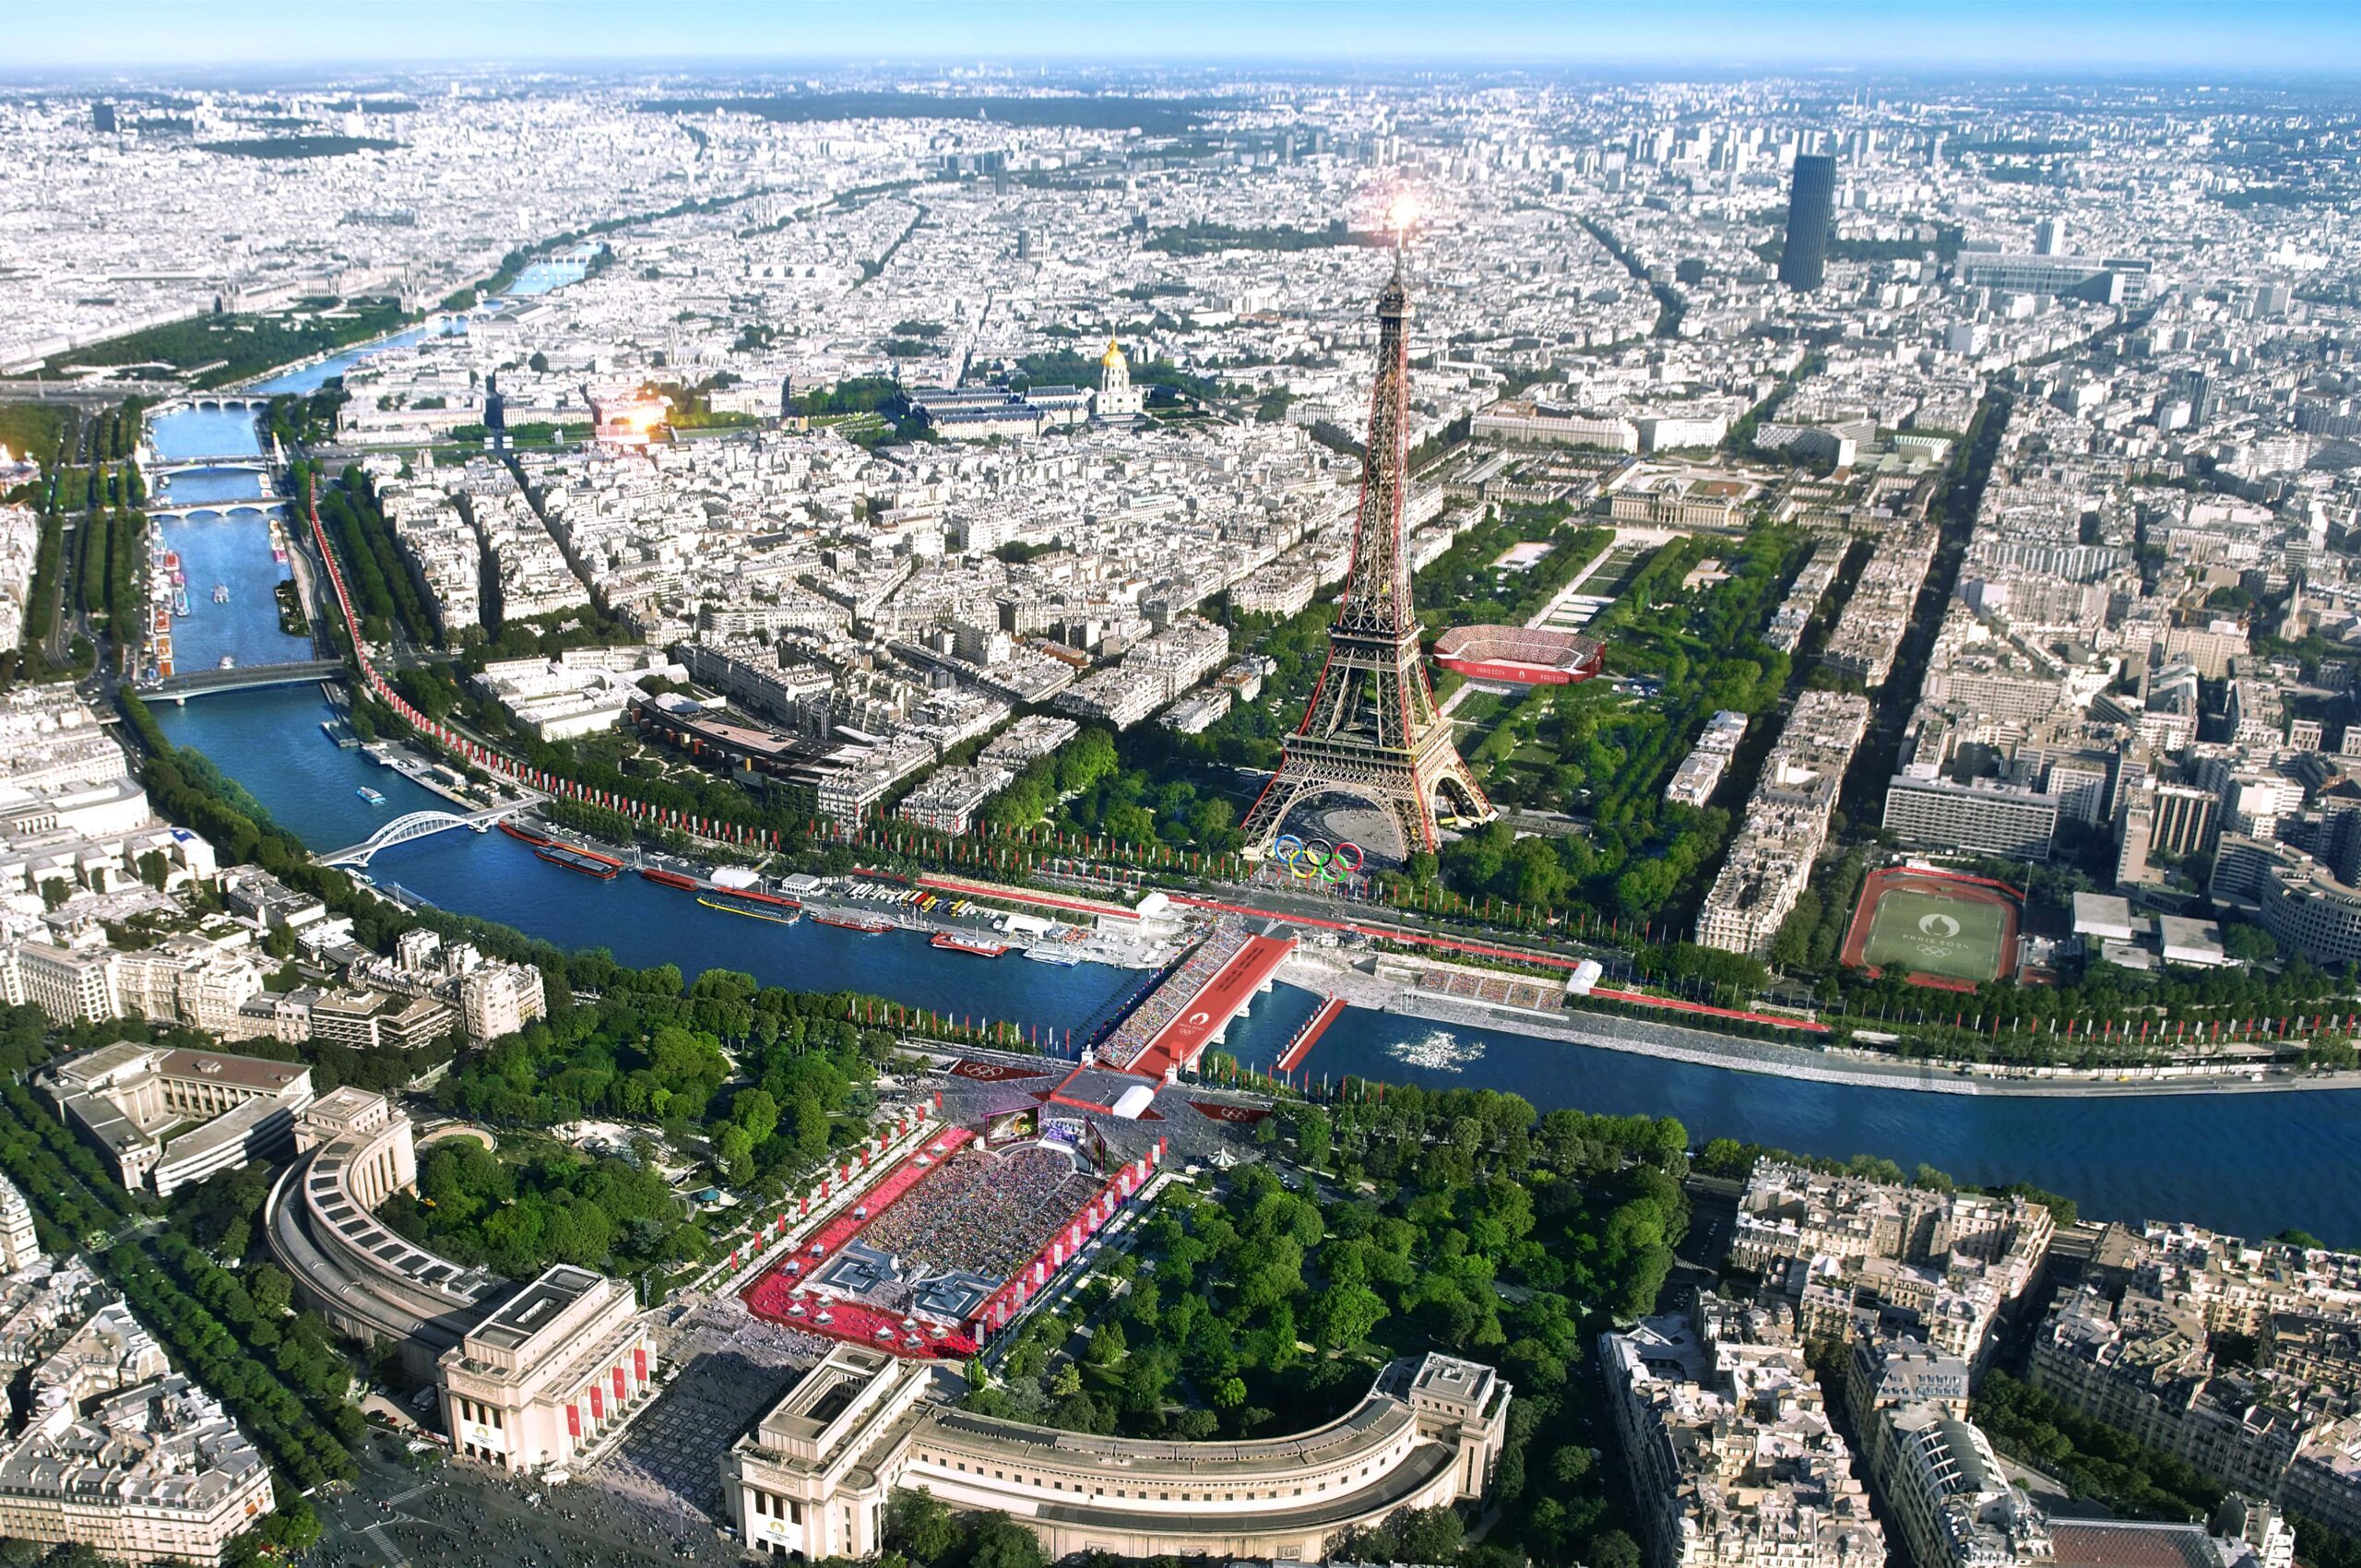 Paris 2024 Competition Venue Concept Map